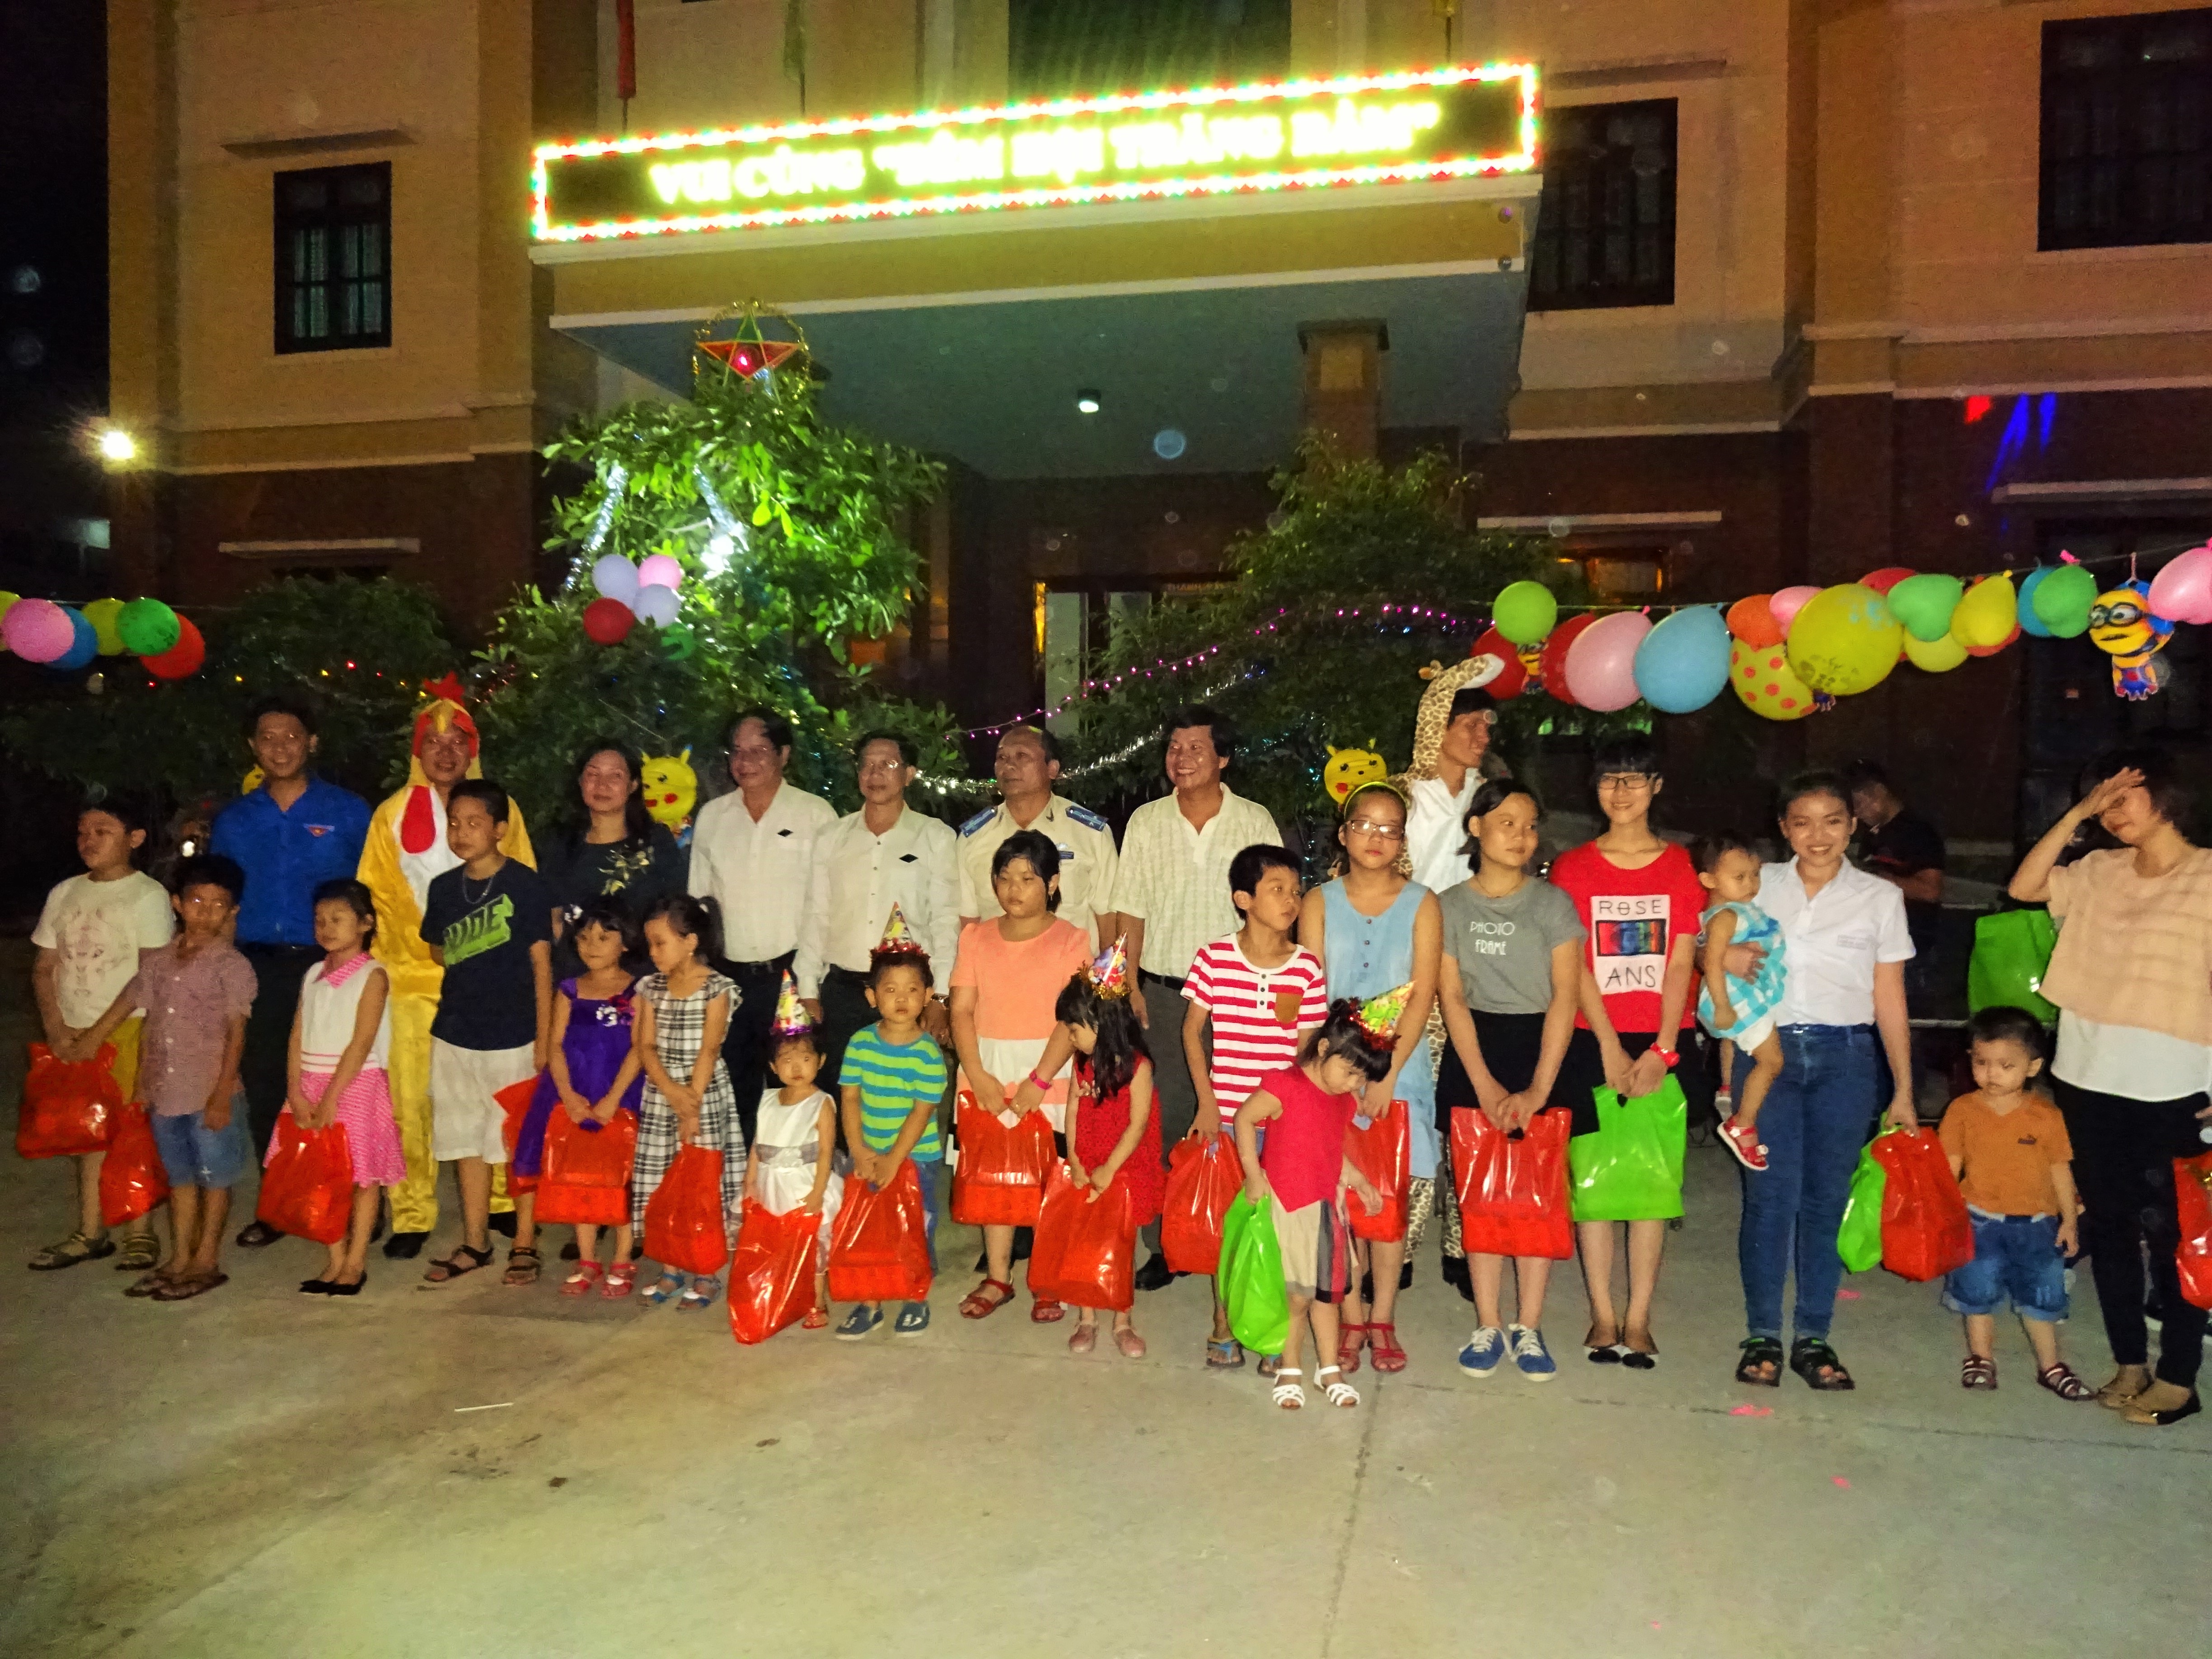 Cục Thi hành án dân sự tỉnh Bình Định tổ chức “Đêm hội trăng rằm” đón Tết Trung thu cùng các cháu thiếu niên, nhi đồng